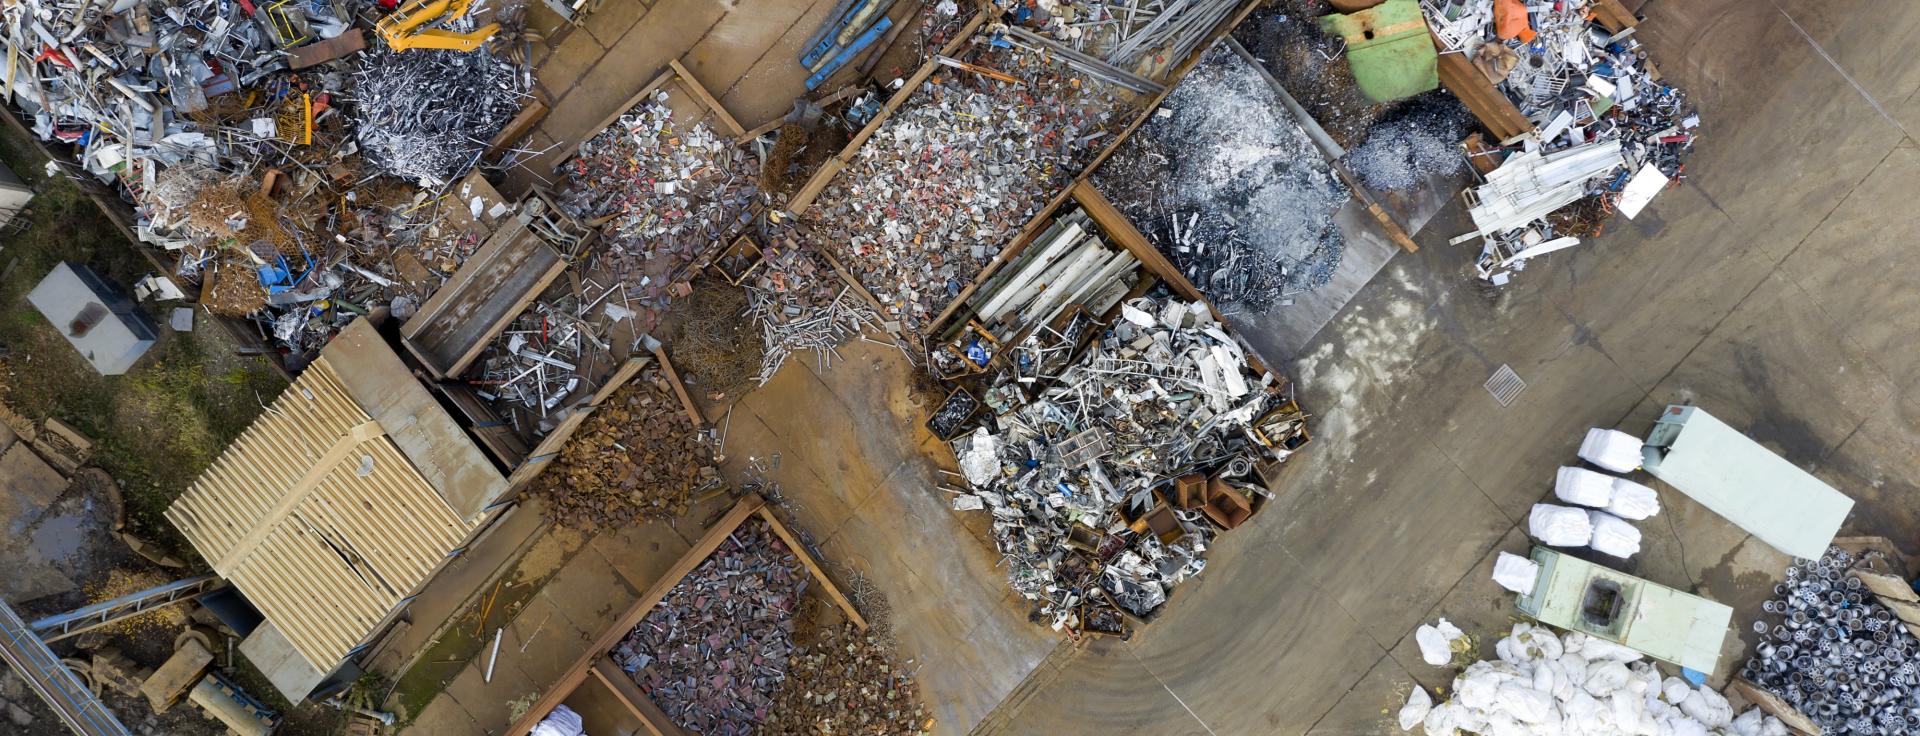 Le recyclage permet aujourd’hui d’éviter chaque année en France l’équivalent de 20 millions de tonnes d’équivalent CO2.